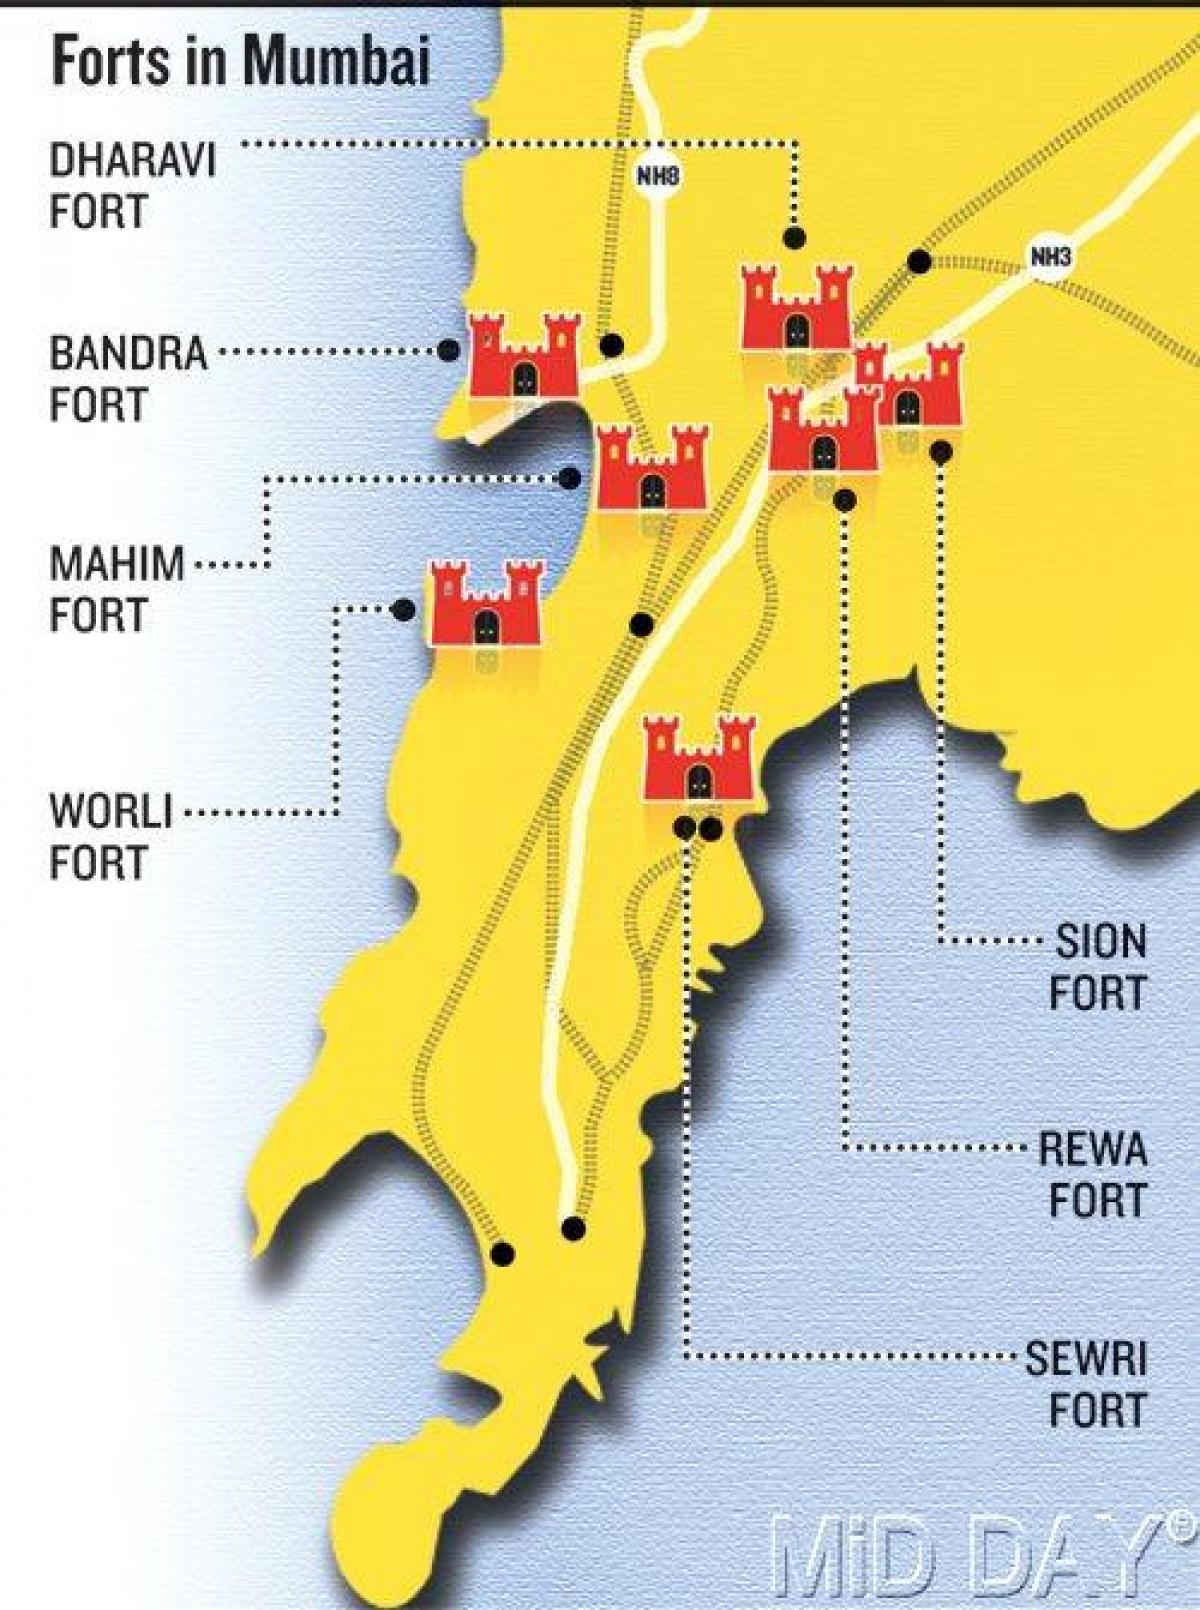 بمبئی فورت نقشه منطقه